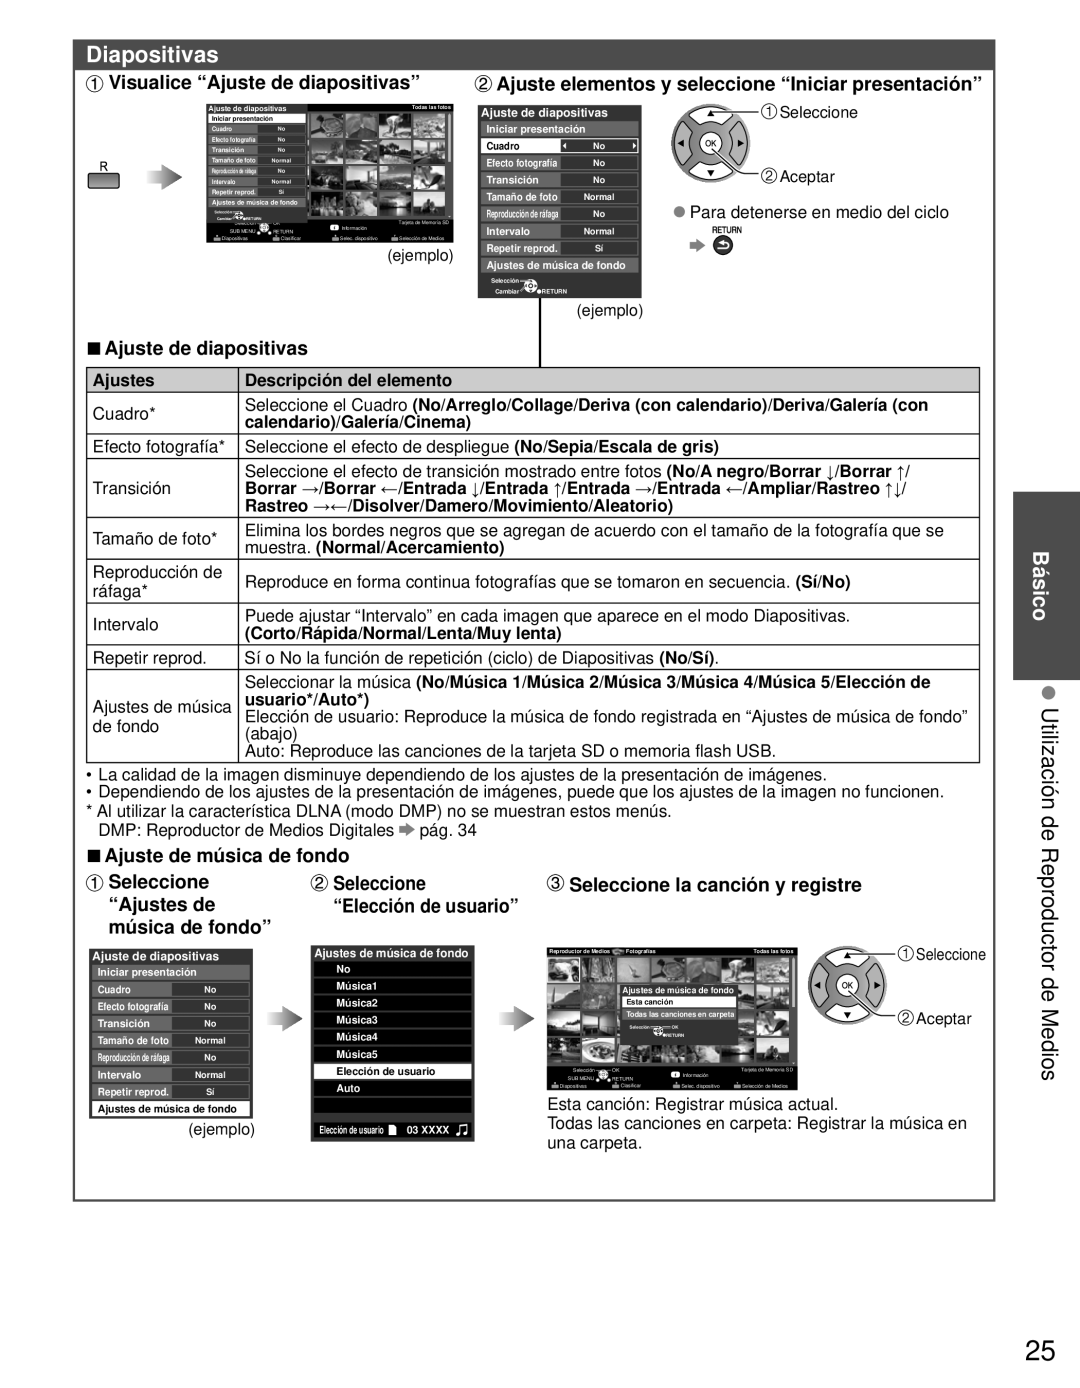 Panasonic TC-L42E3 Diapositivas, Visualice “Ajuste de diapositivas”, Ajuste elementos y seleccione “Iniciar presentación” 